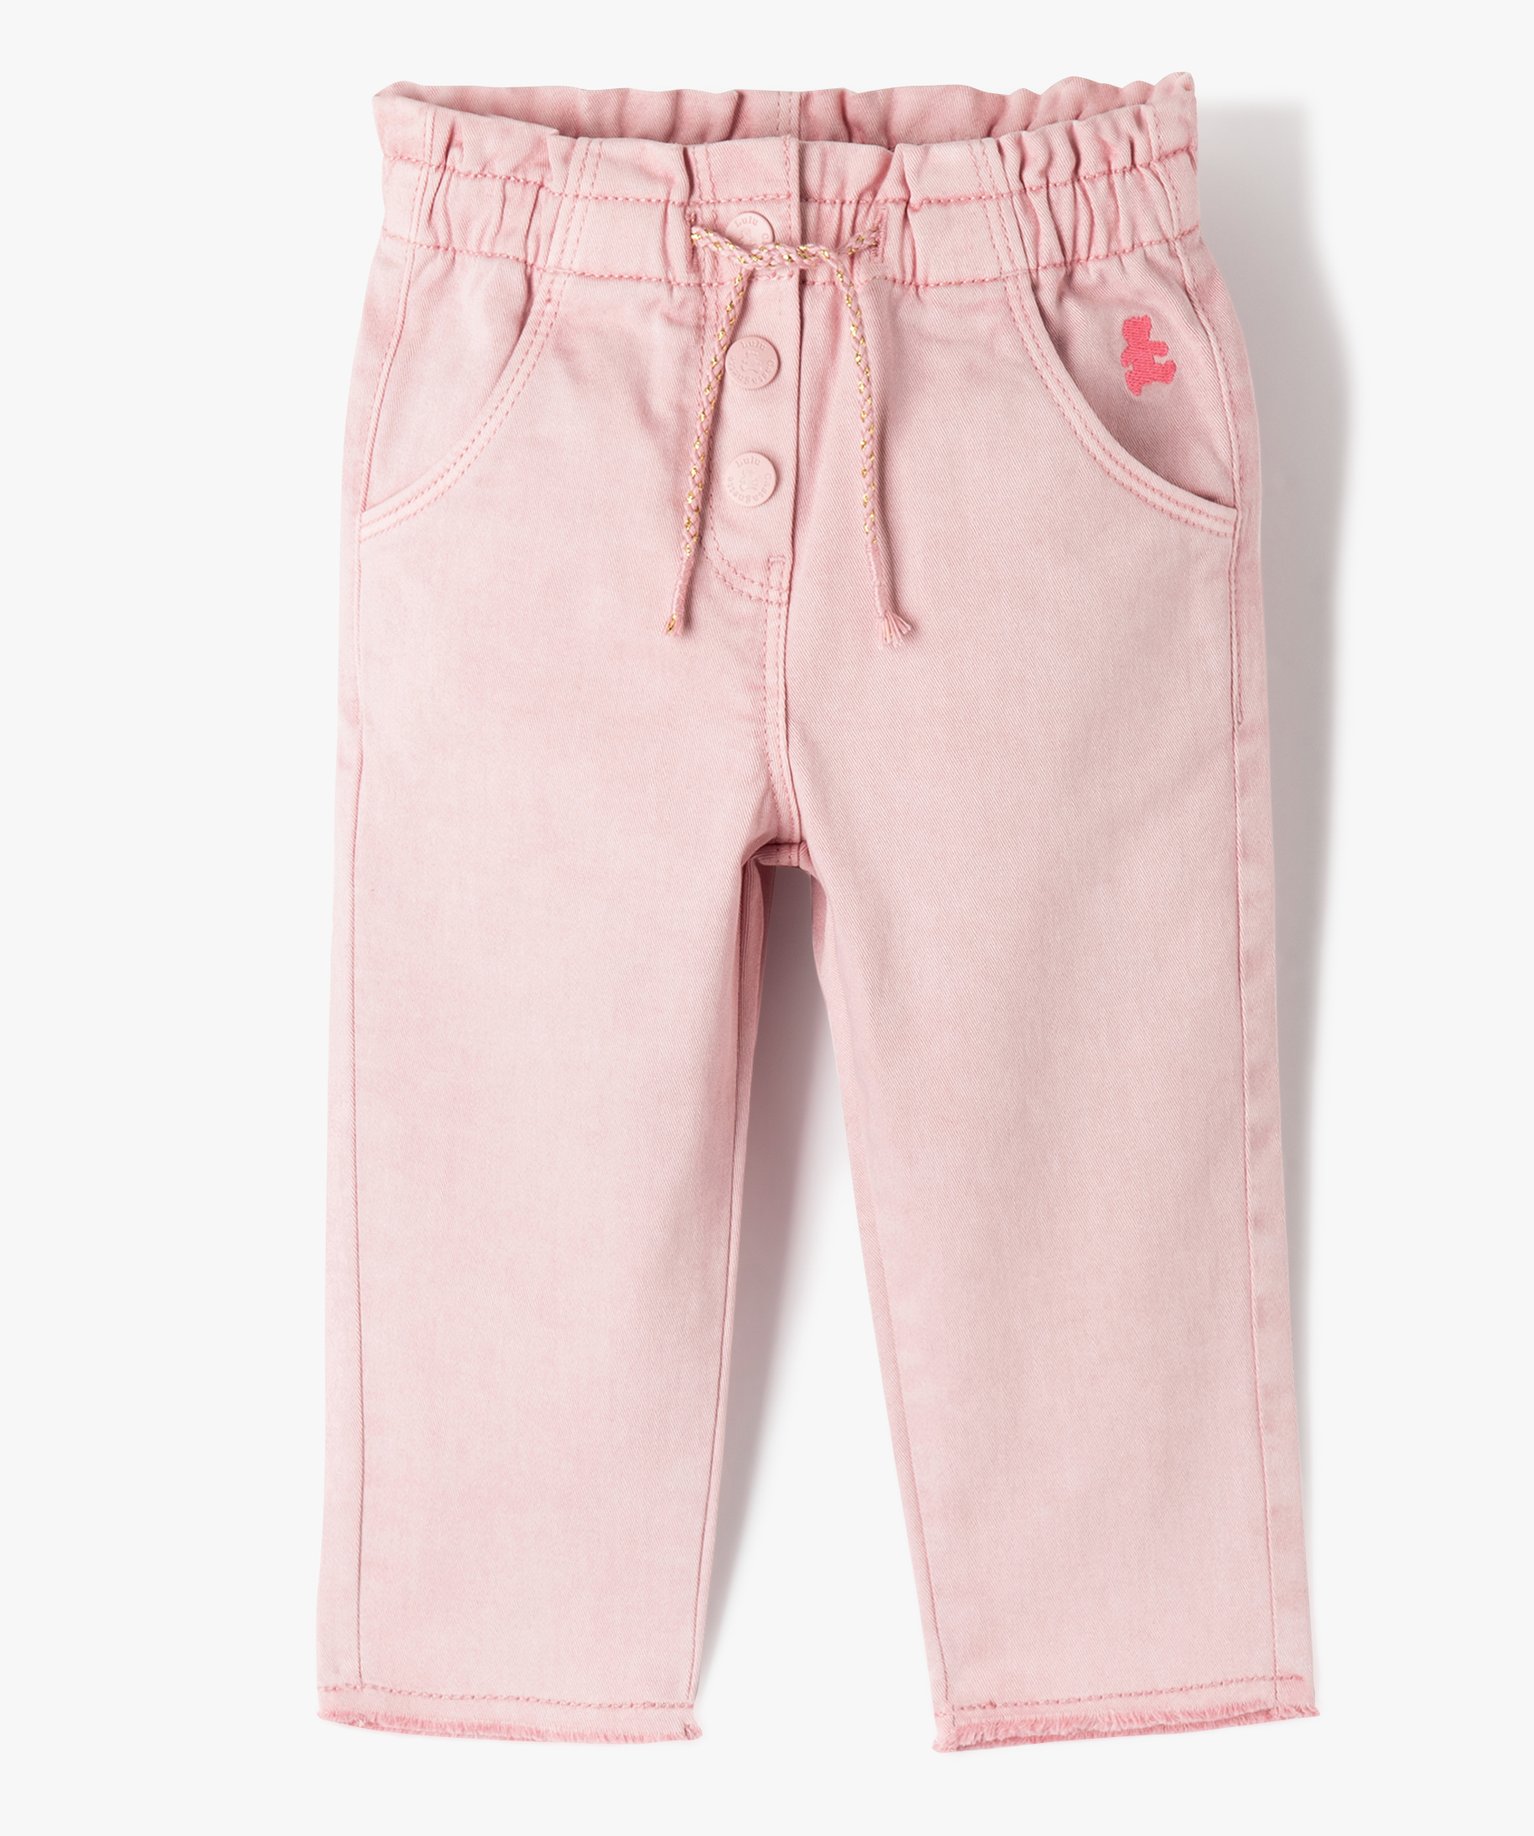 Pantalon en toile avec taille élastique bébé fille - LuluCastagnette - 3 - rose - LULUCASTAGNETTE